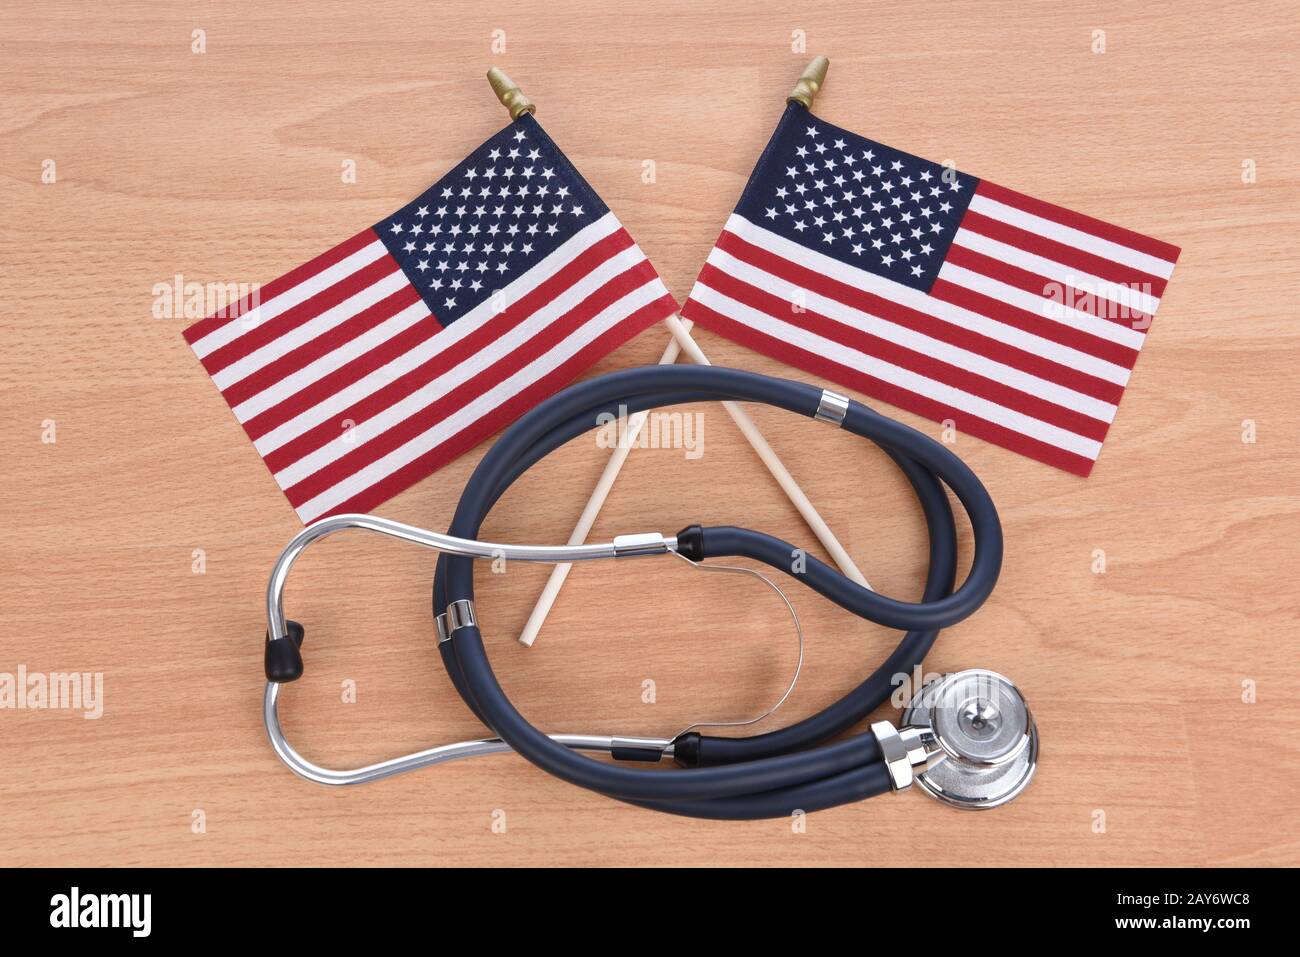 Concetto Di Assistenza Sanitaria Militare. Sfondo in legno chiaro con stetoscopio e due bandiere americane incrociate. Foto Stock